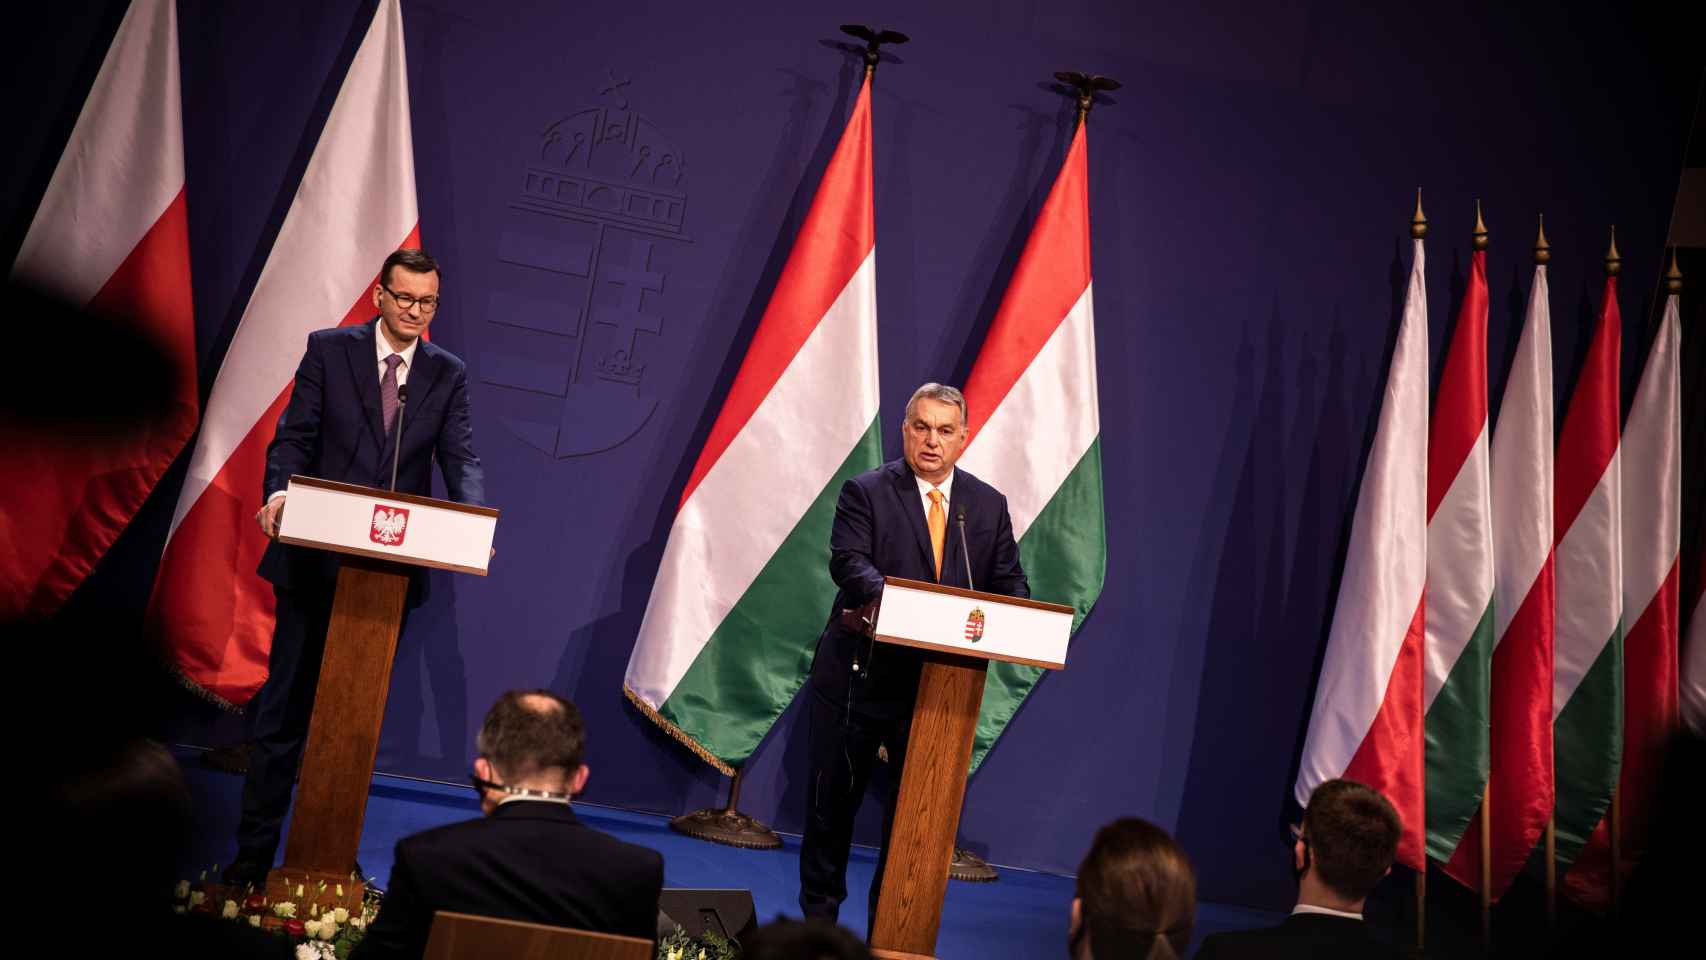 Mateusz Morawiecki y Viktor Orbán, durante su reunión en noviembre en Budapest